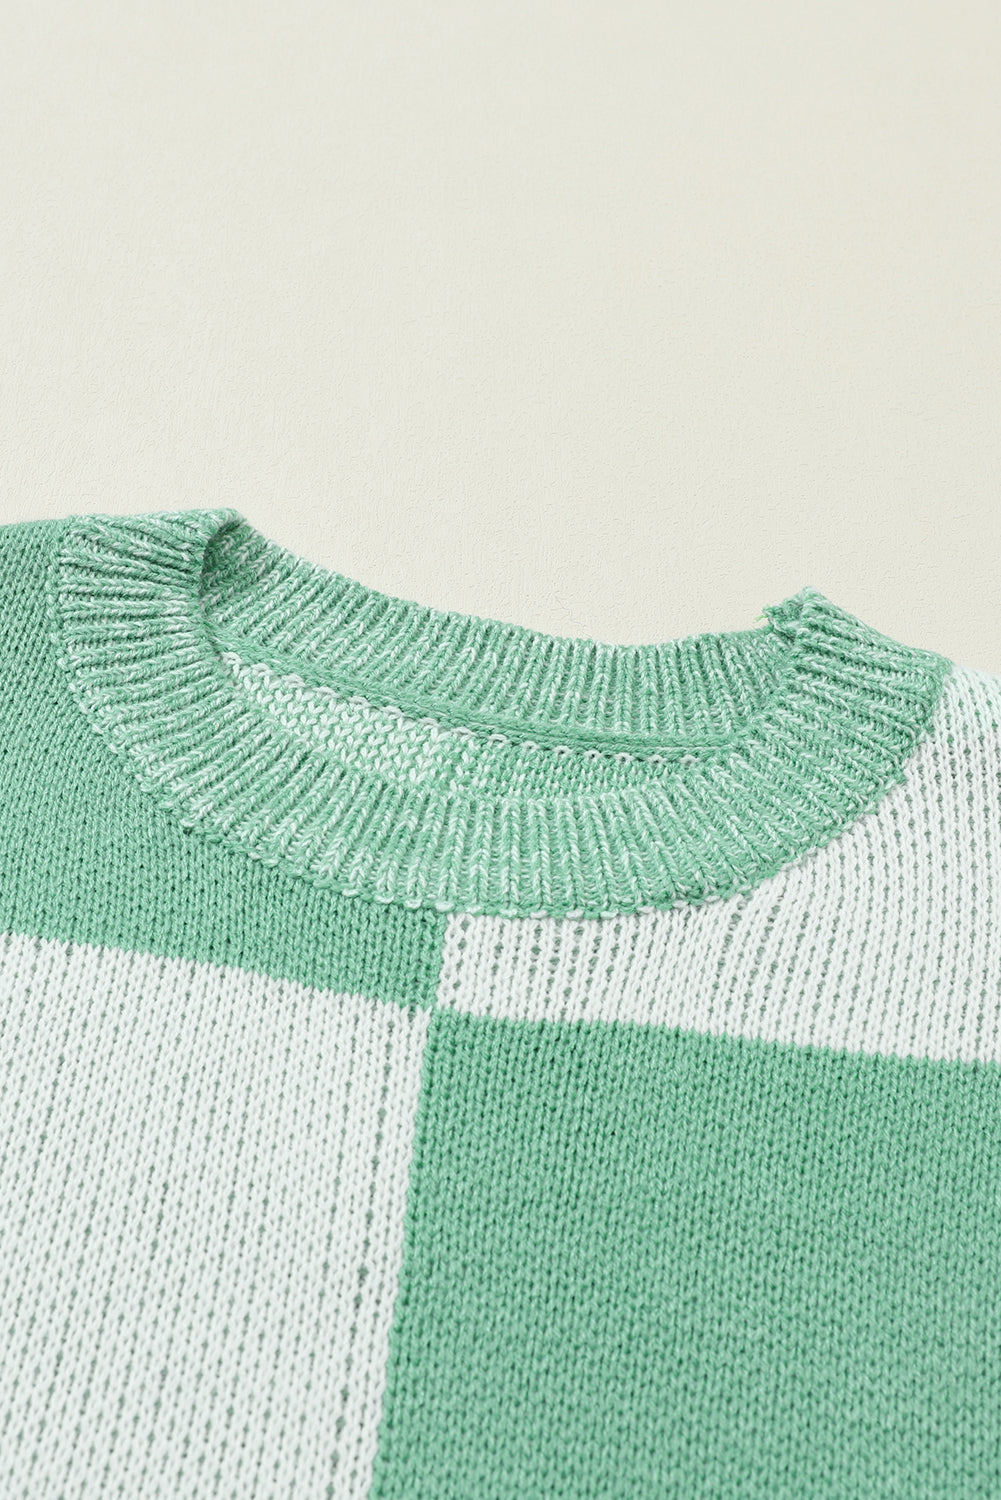 Flaxen Checkered Print Drop Shoulder Sweater